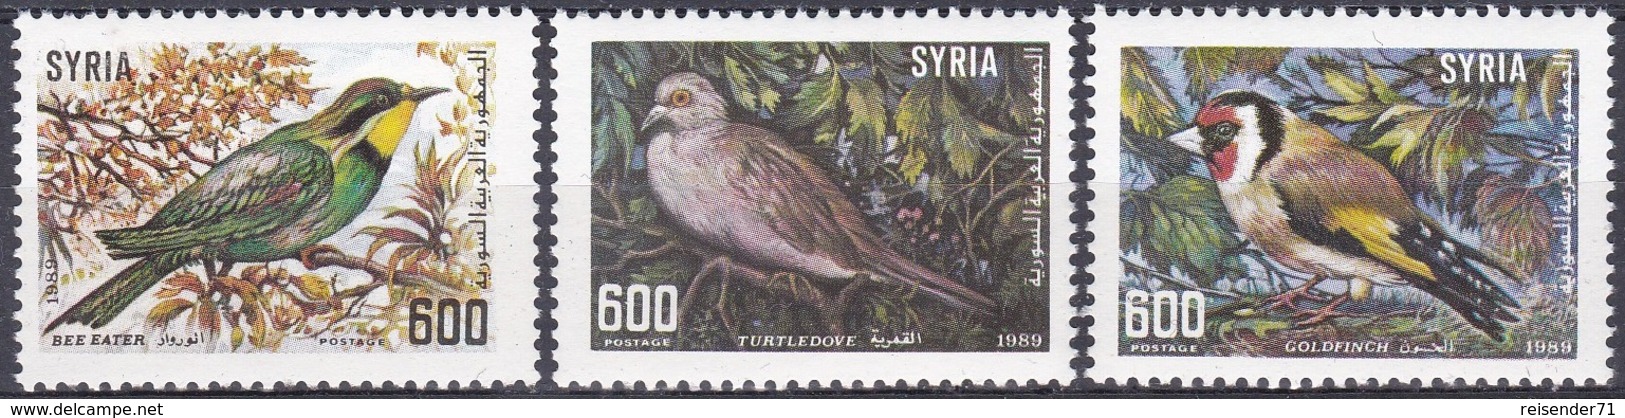 Syrien Syria 1989 Tiere Fauna Animals Vögel Birds Stieglitz Bienenfresser Turteltauben Tauben Doves, Mi. 1745-7 ** - Syrien